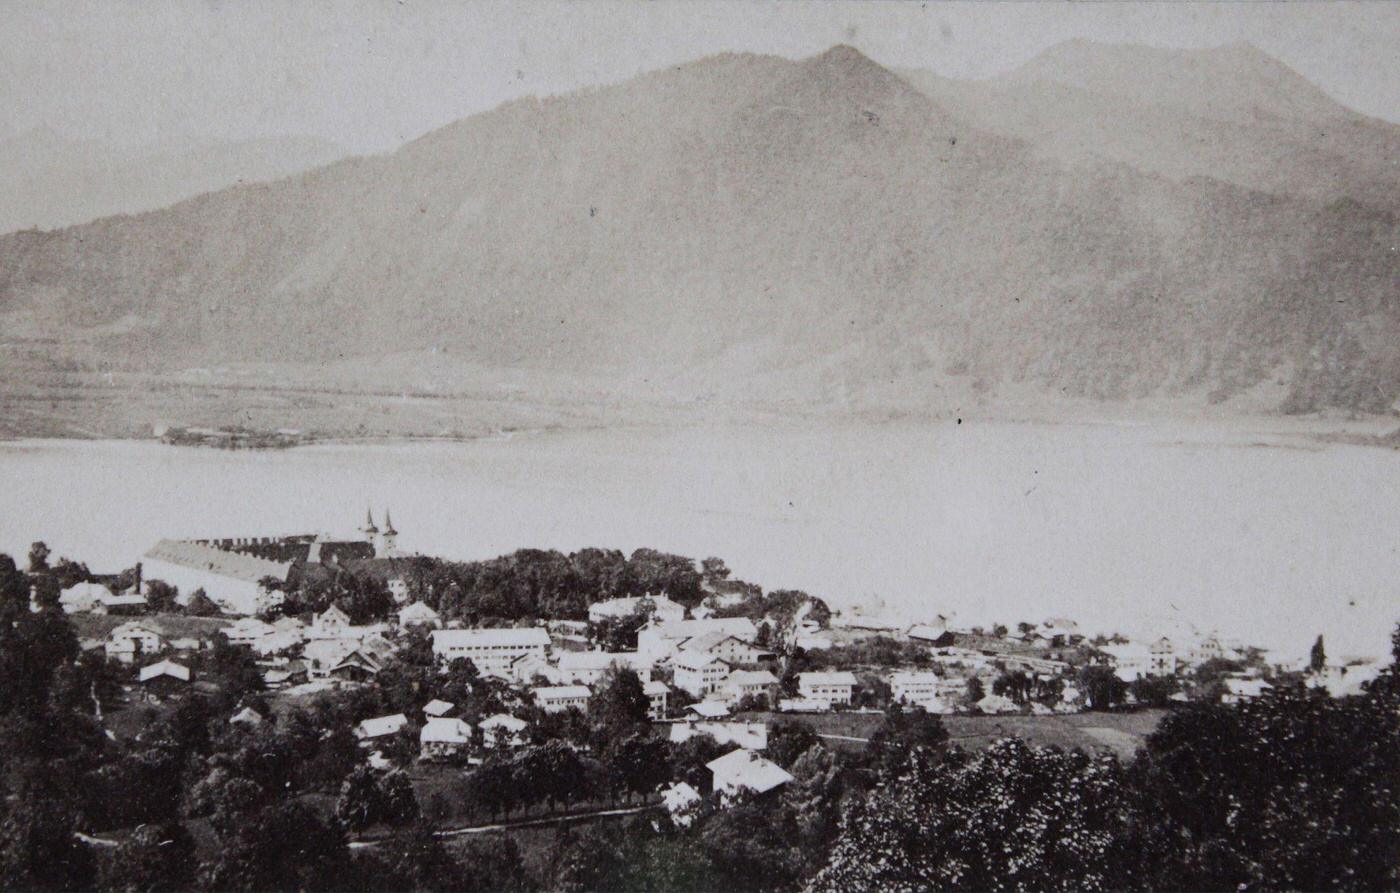 Village and lake, Tegernsee, 1880.